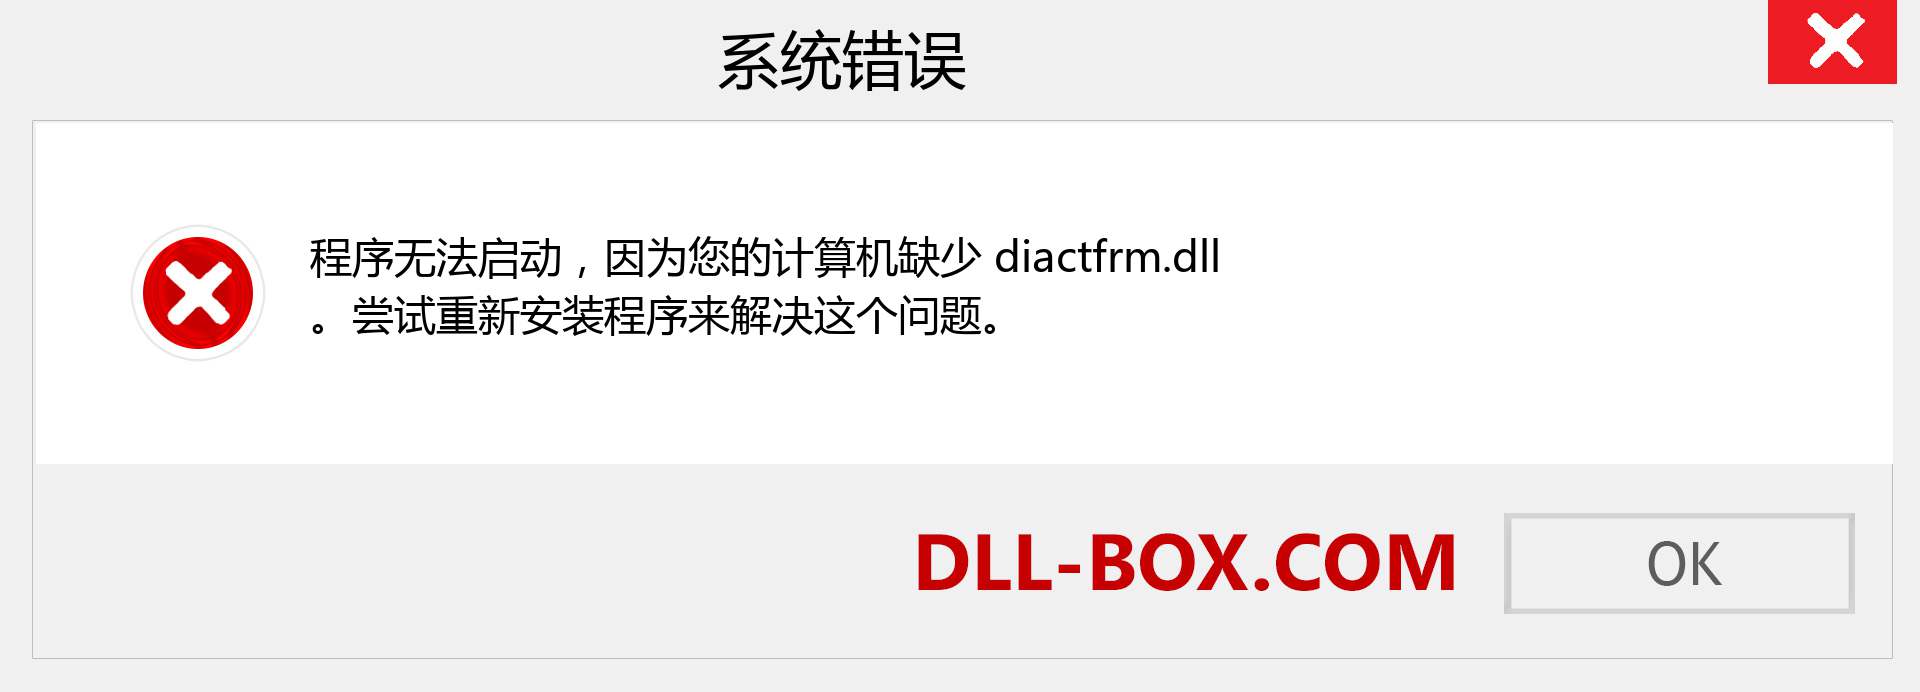 diactfrm.dll 文件丢失？。 适用于 Windows 7、8、10 的下载 - 修复 Windows、照片、图像上的 diactfrm dll 丢失错误